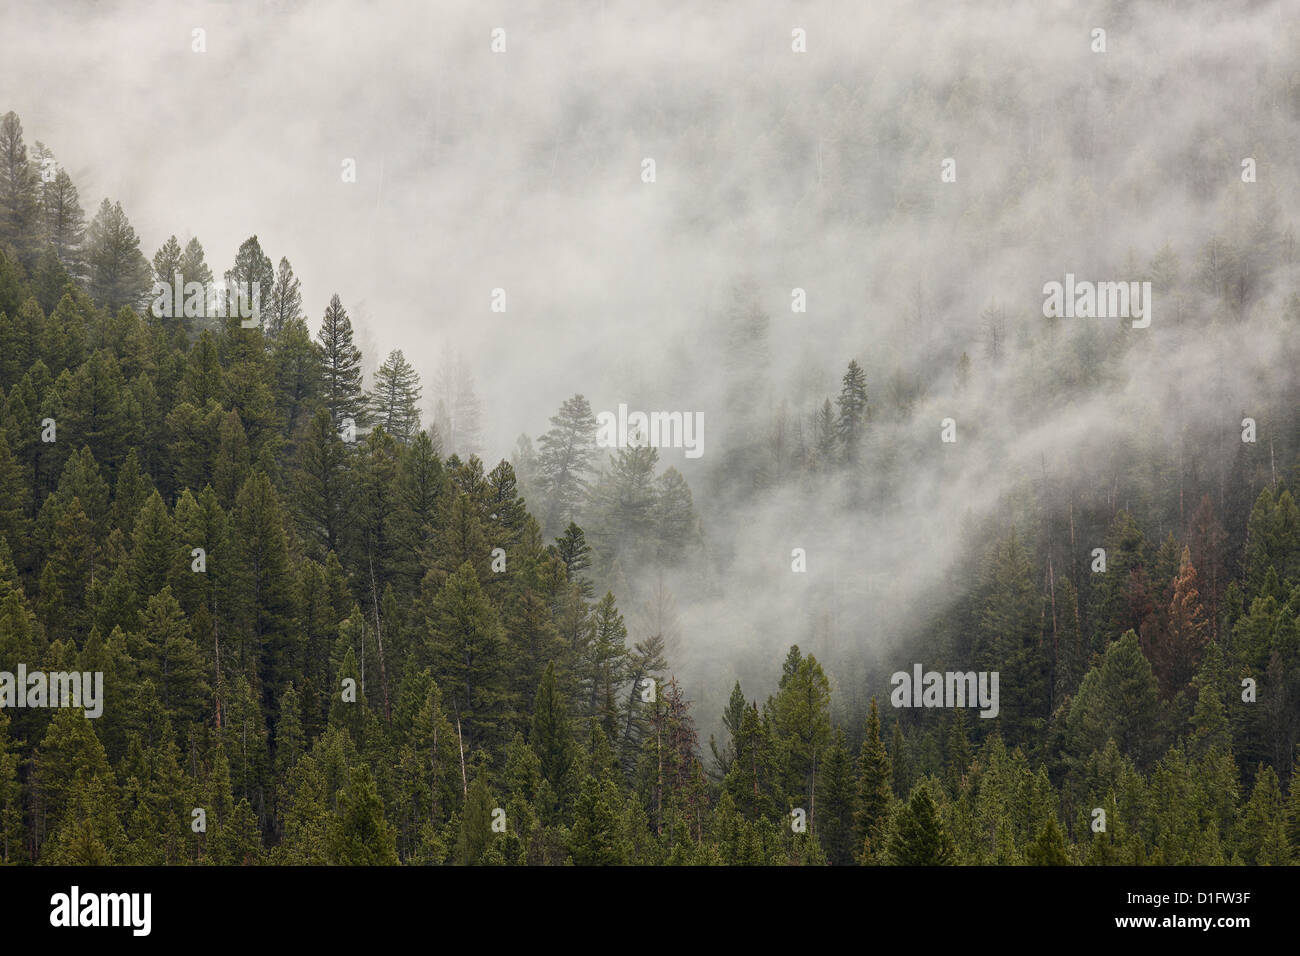 La nebbia tra i sempreverdi, il Parco Nazionale di Yellowstone, Sito Patrimonio Mondiale dell'UNESCO, Wyoming negli Stati Uniti d'America, America del Nord Foto Stock